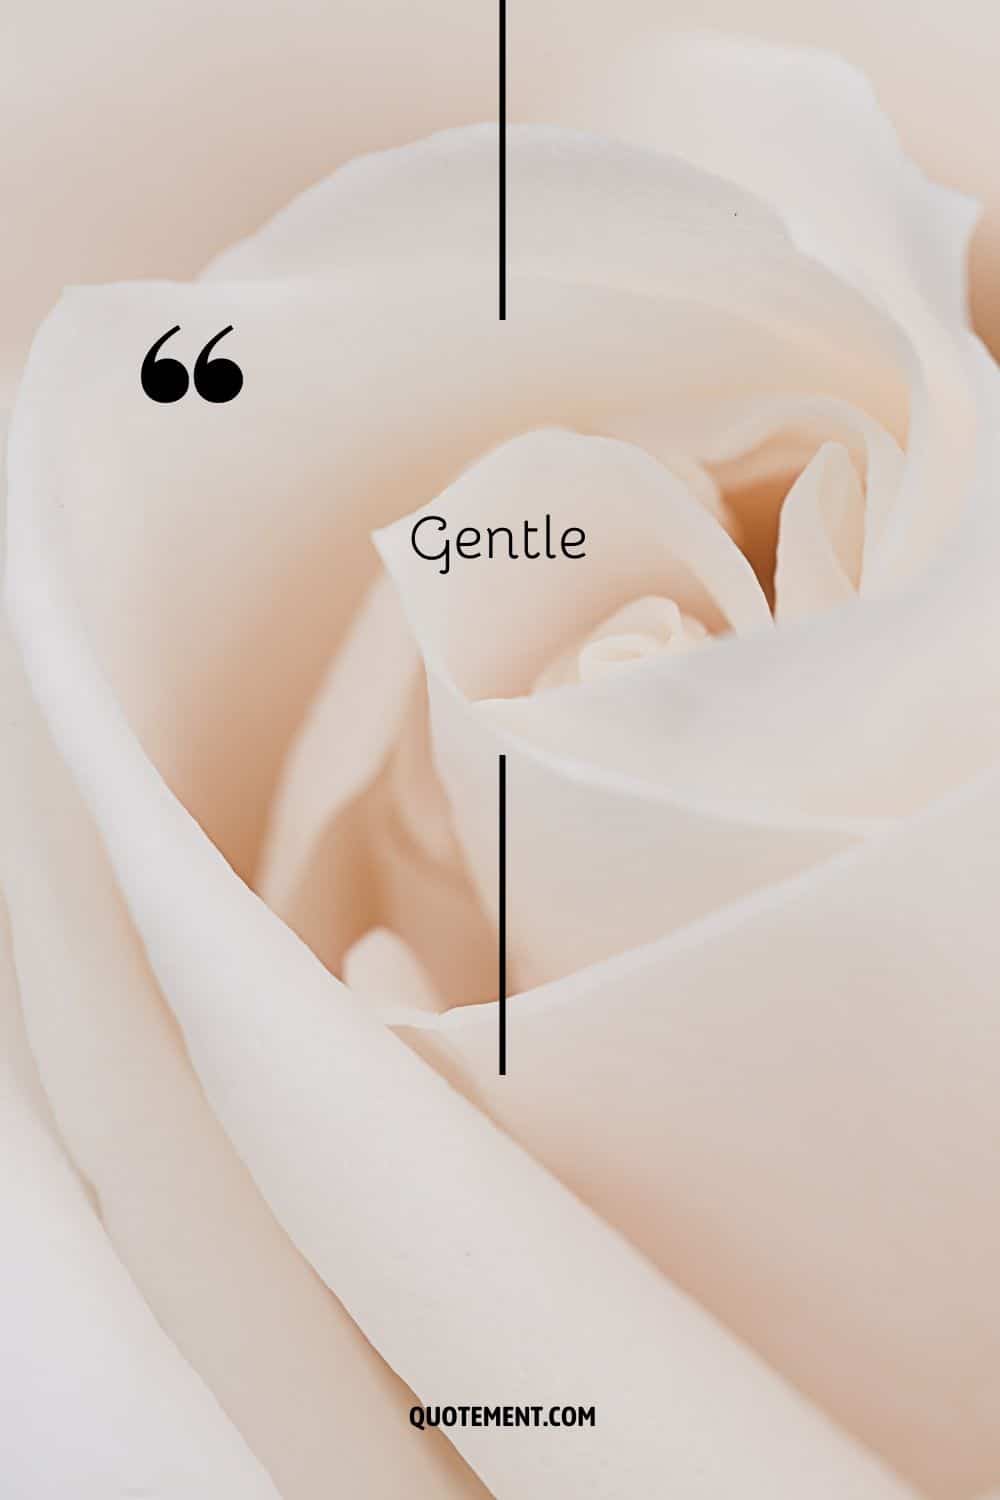 una rosa blanca que representa la palabra gentil